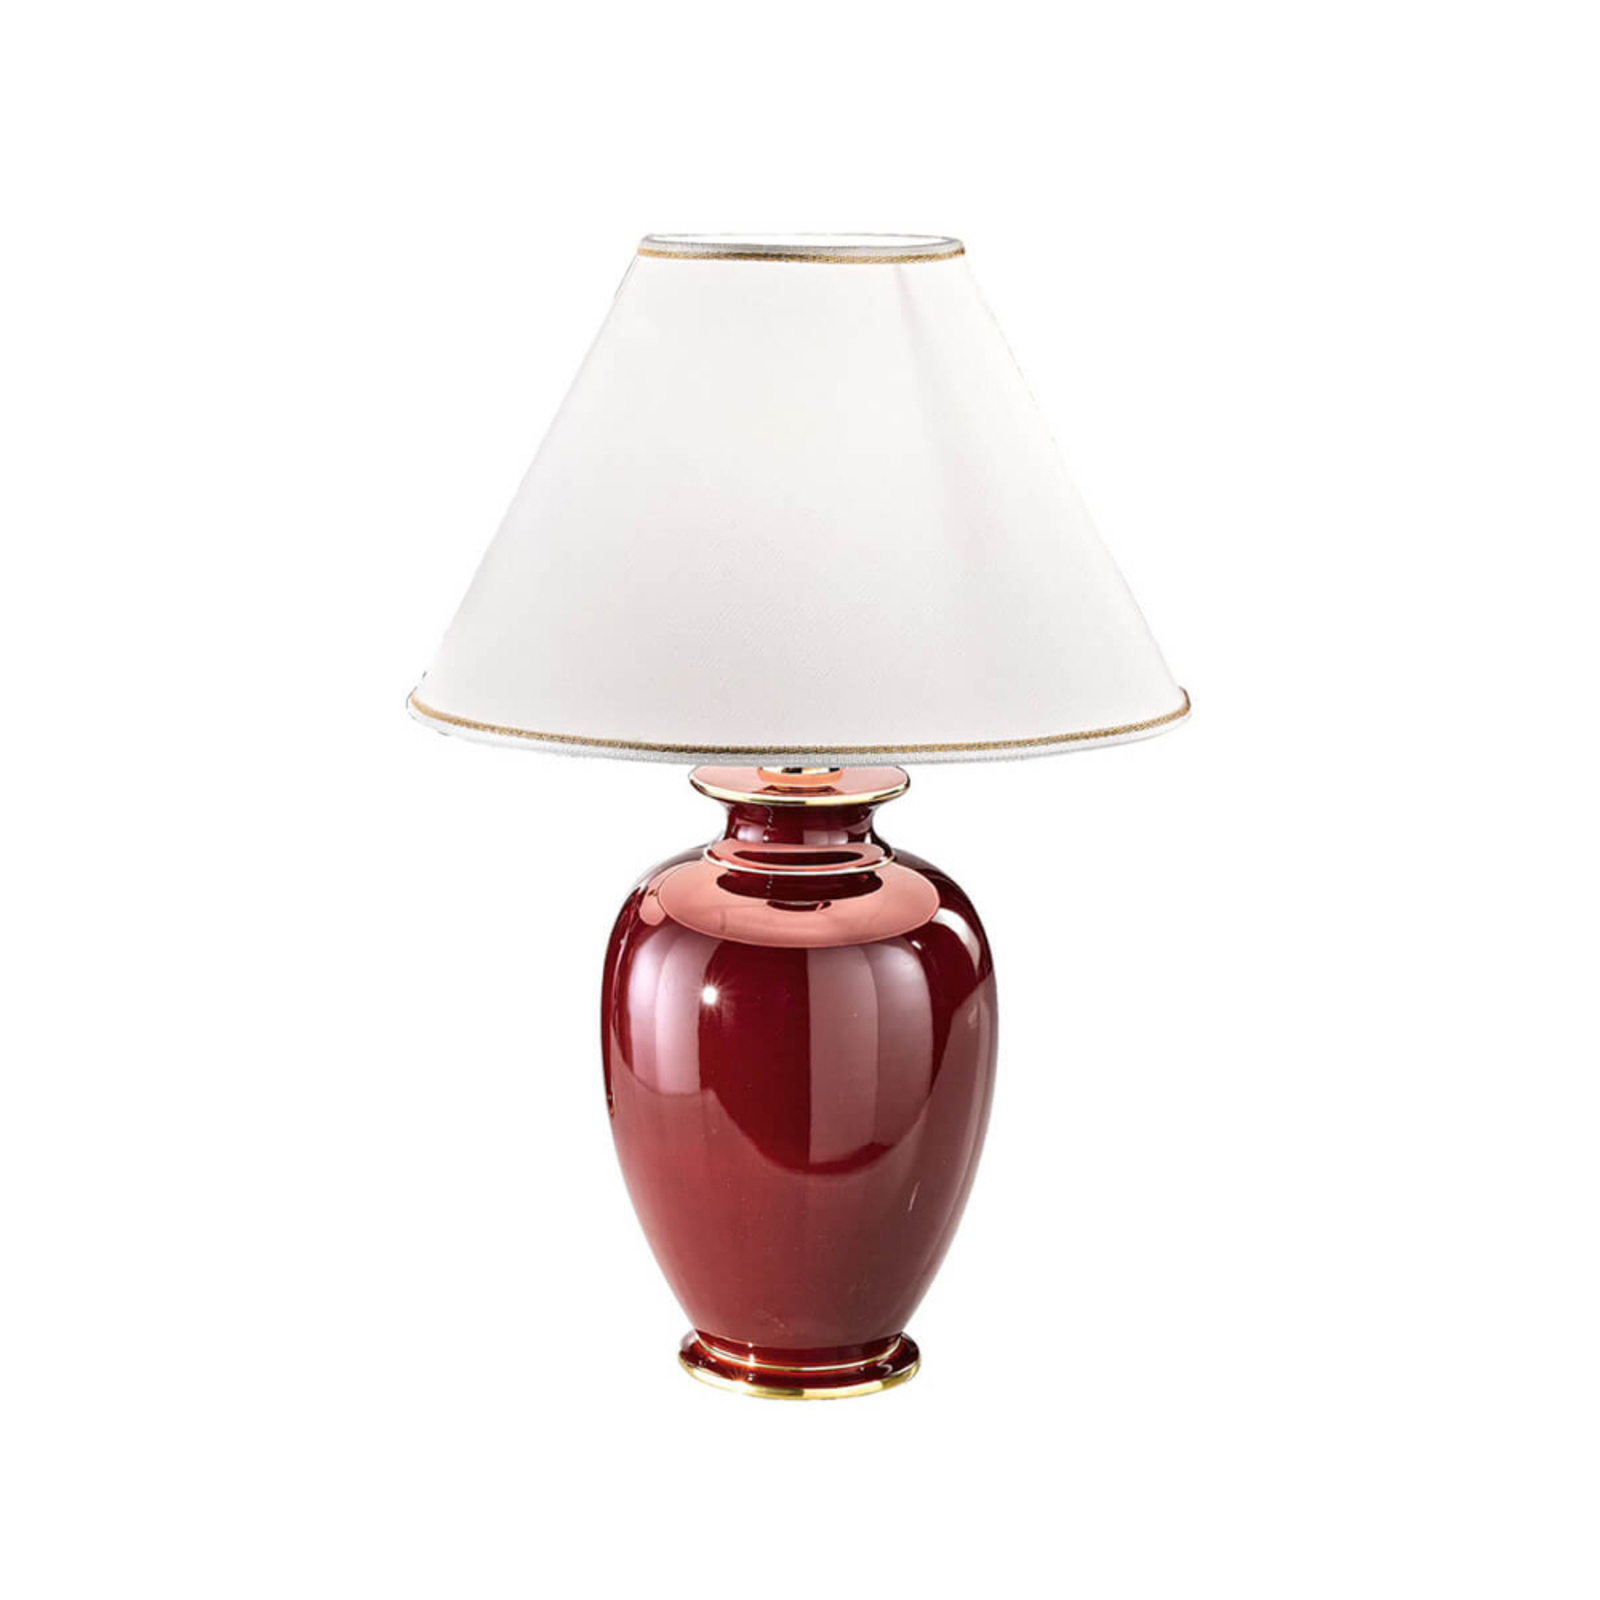 KOLARZ Bordeaux lámpara de mesa, 43 cm de alto